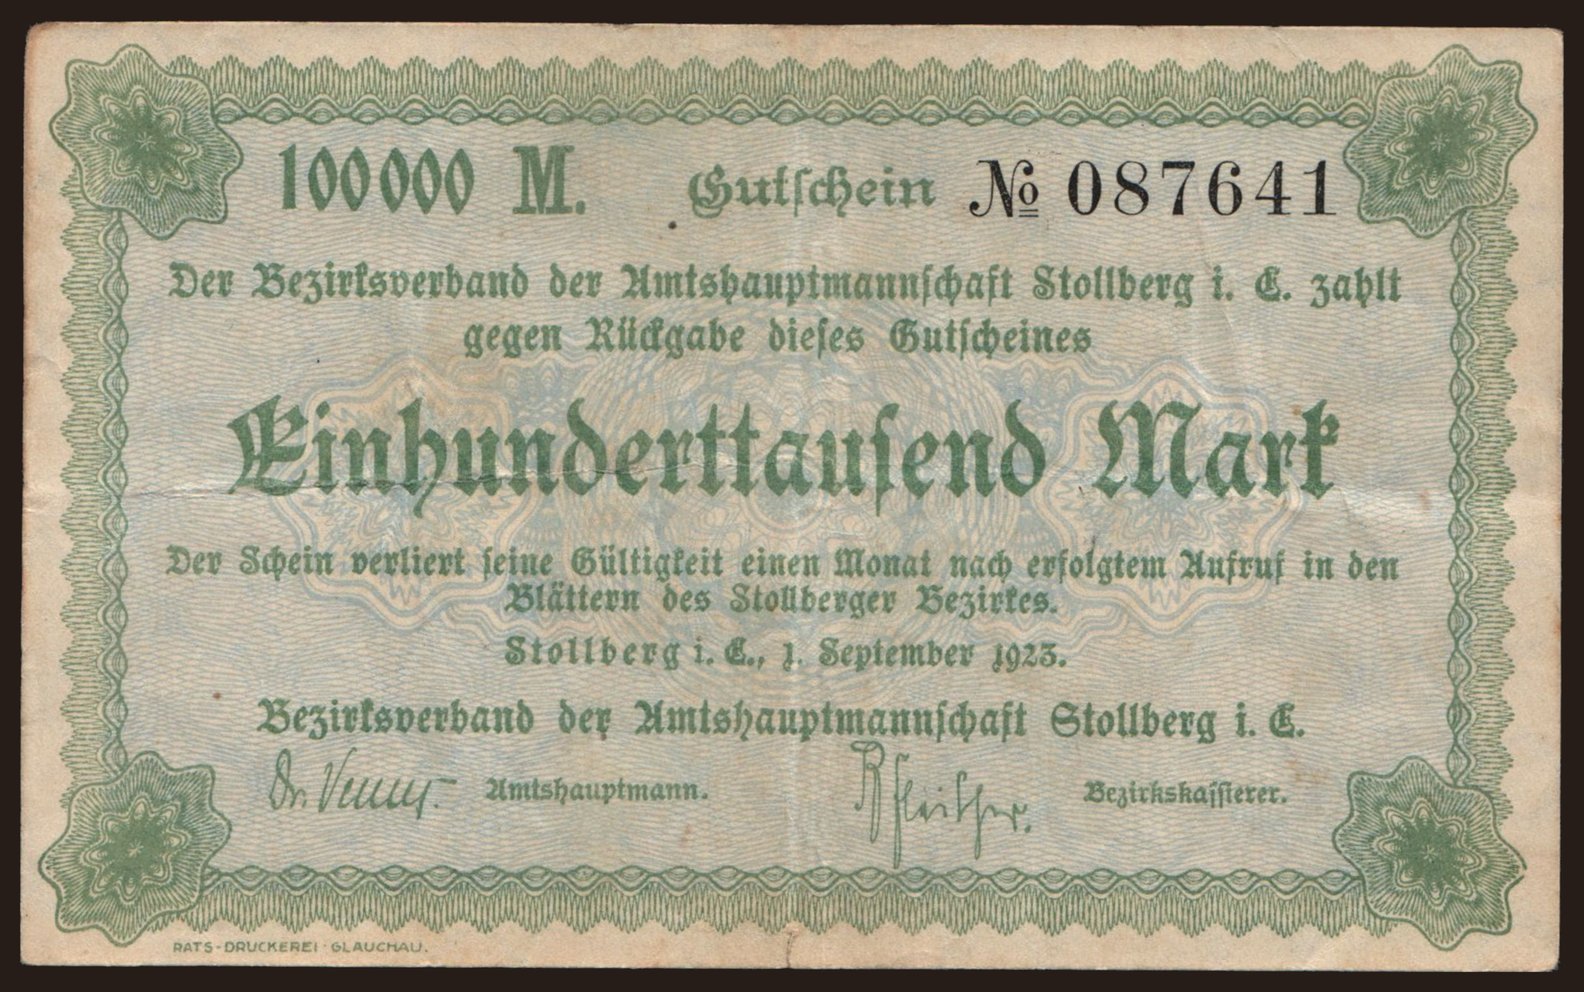 Stollberg/ Bezirksverband der Amtshauptmannschaft, 100.000 Mark, 1923